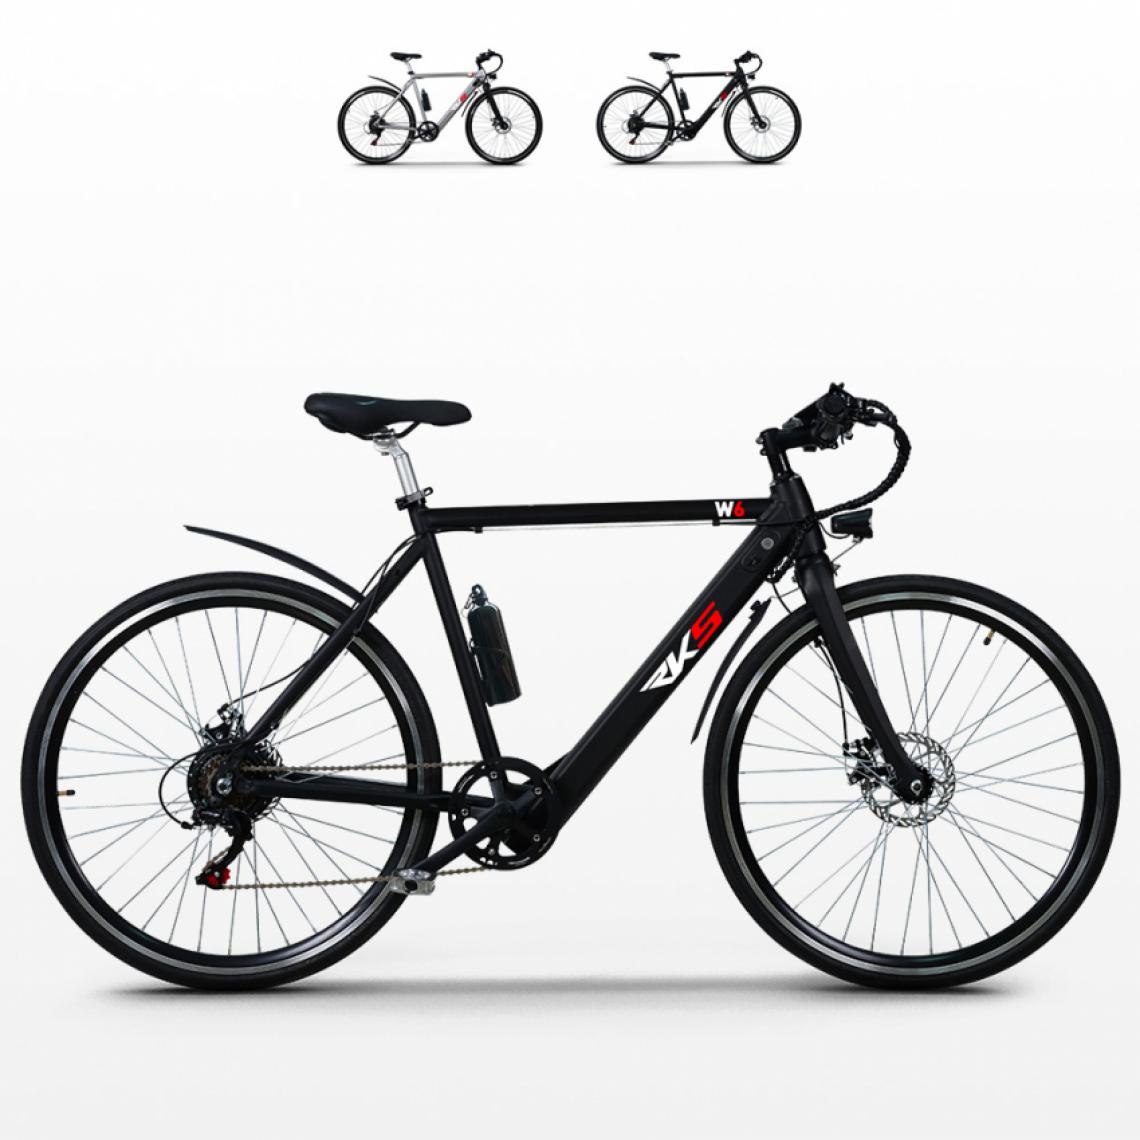 RKS - Vélo électrique avec cadre en aluminium ebike pour homme 250W Shimano W6, Couleur: Noir - Vélo électrique